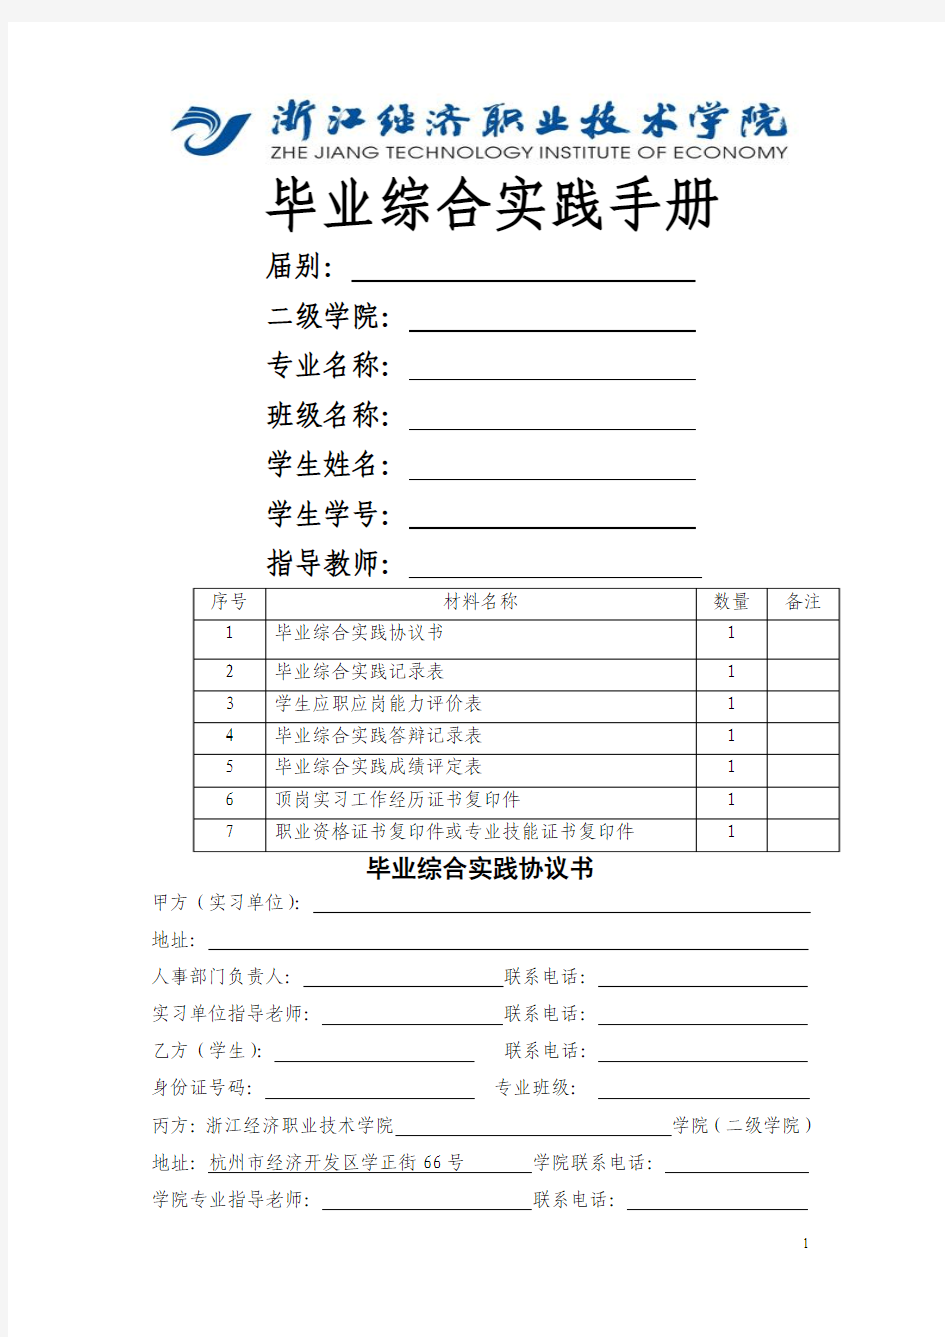 毕业综合实践手册(最新版2014届用)